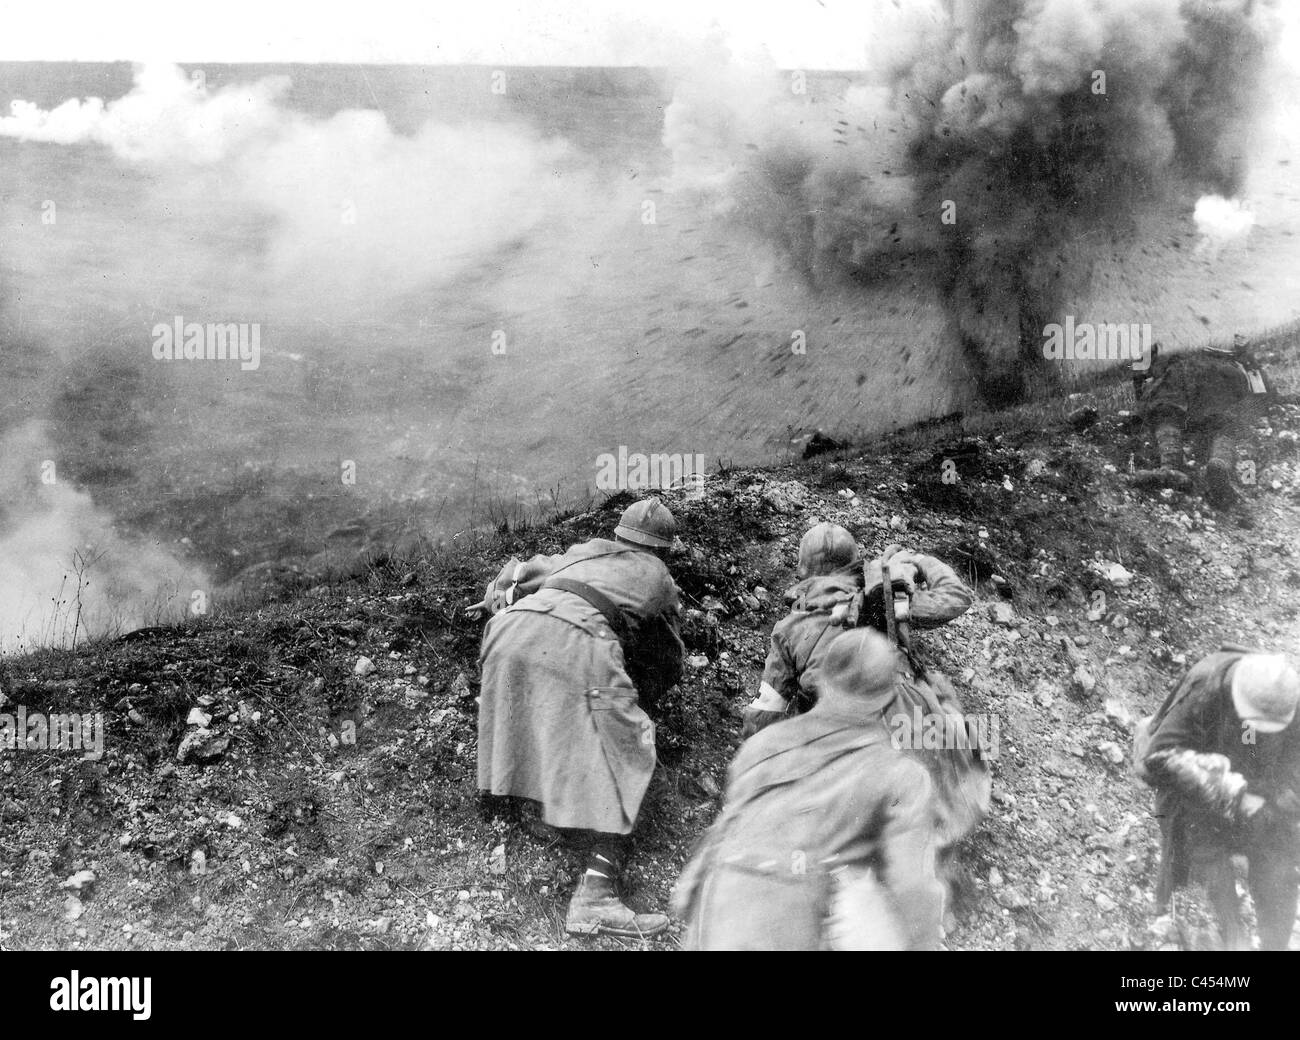 Soldats français au cours de la bataille de Verdun lors de la Première Guerre mondiale, 1916 Banque D'Images